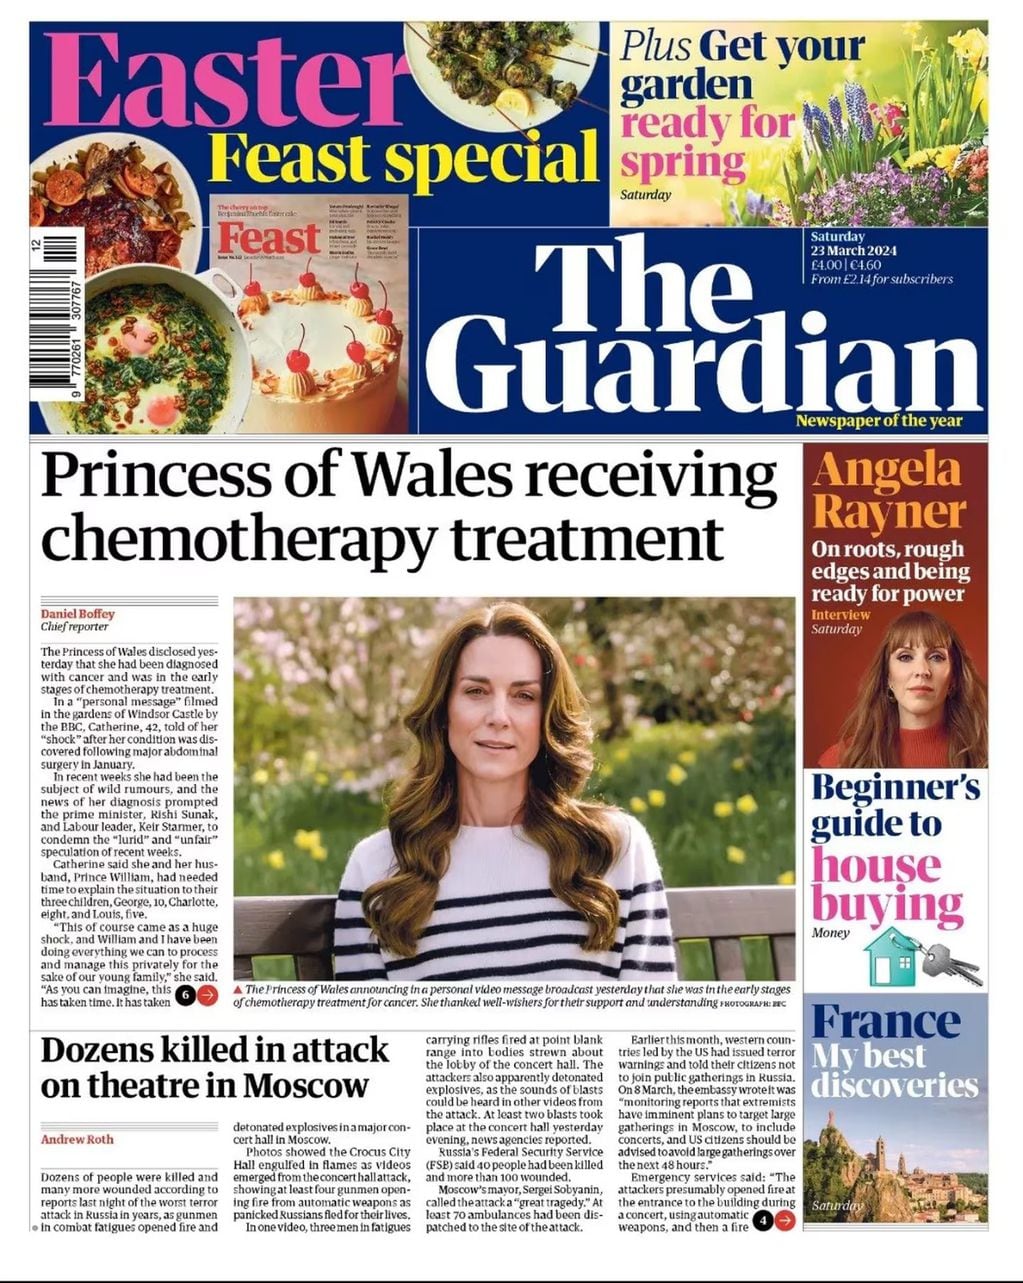 El anuncio de la princesa de Gales es uno de los temas relevantes en las portadas de diarios internacionales